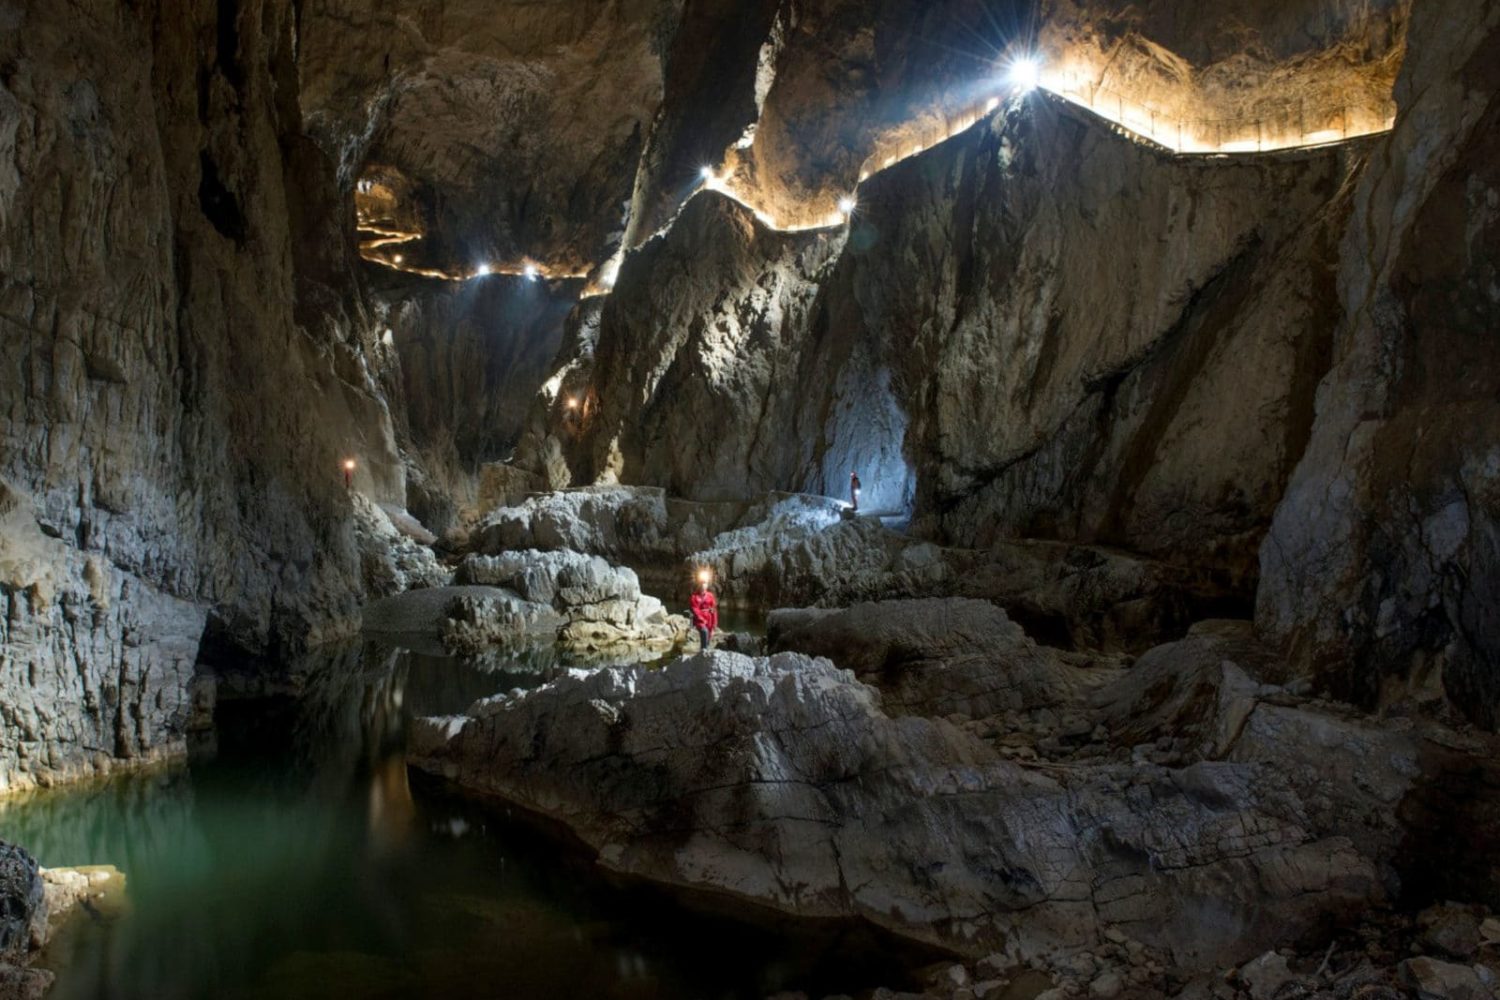 Skocjan cave trip from Bled or Ljubljana